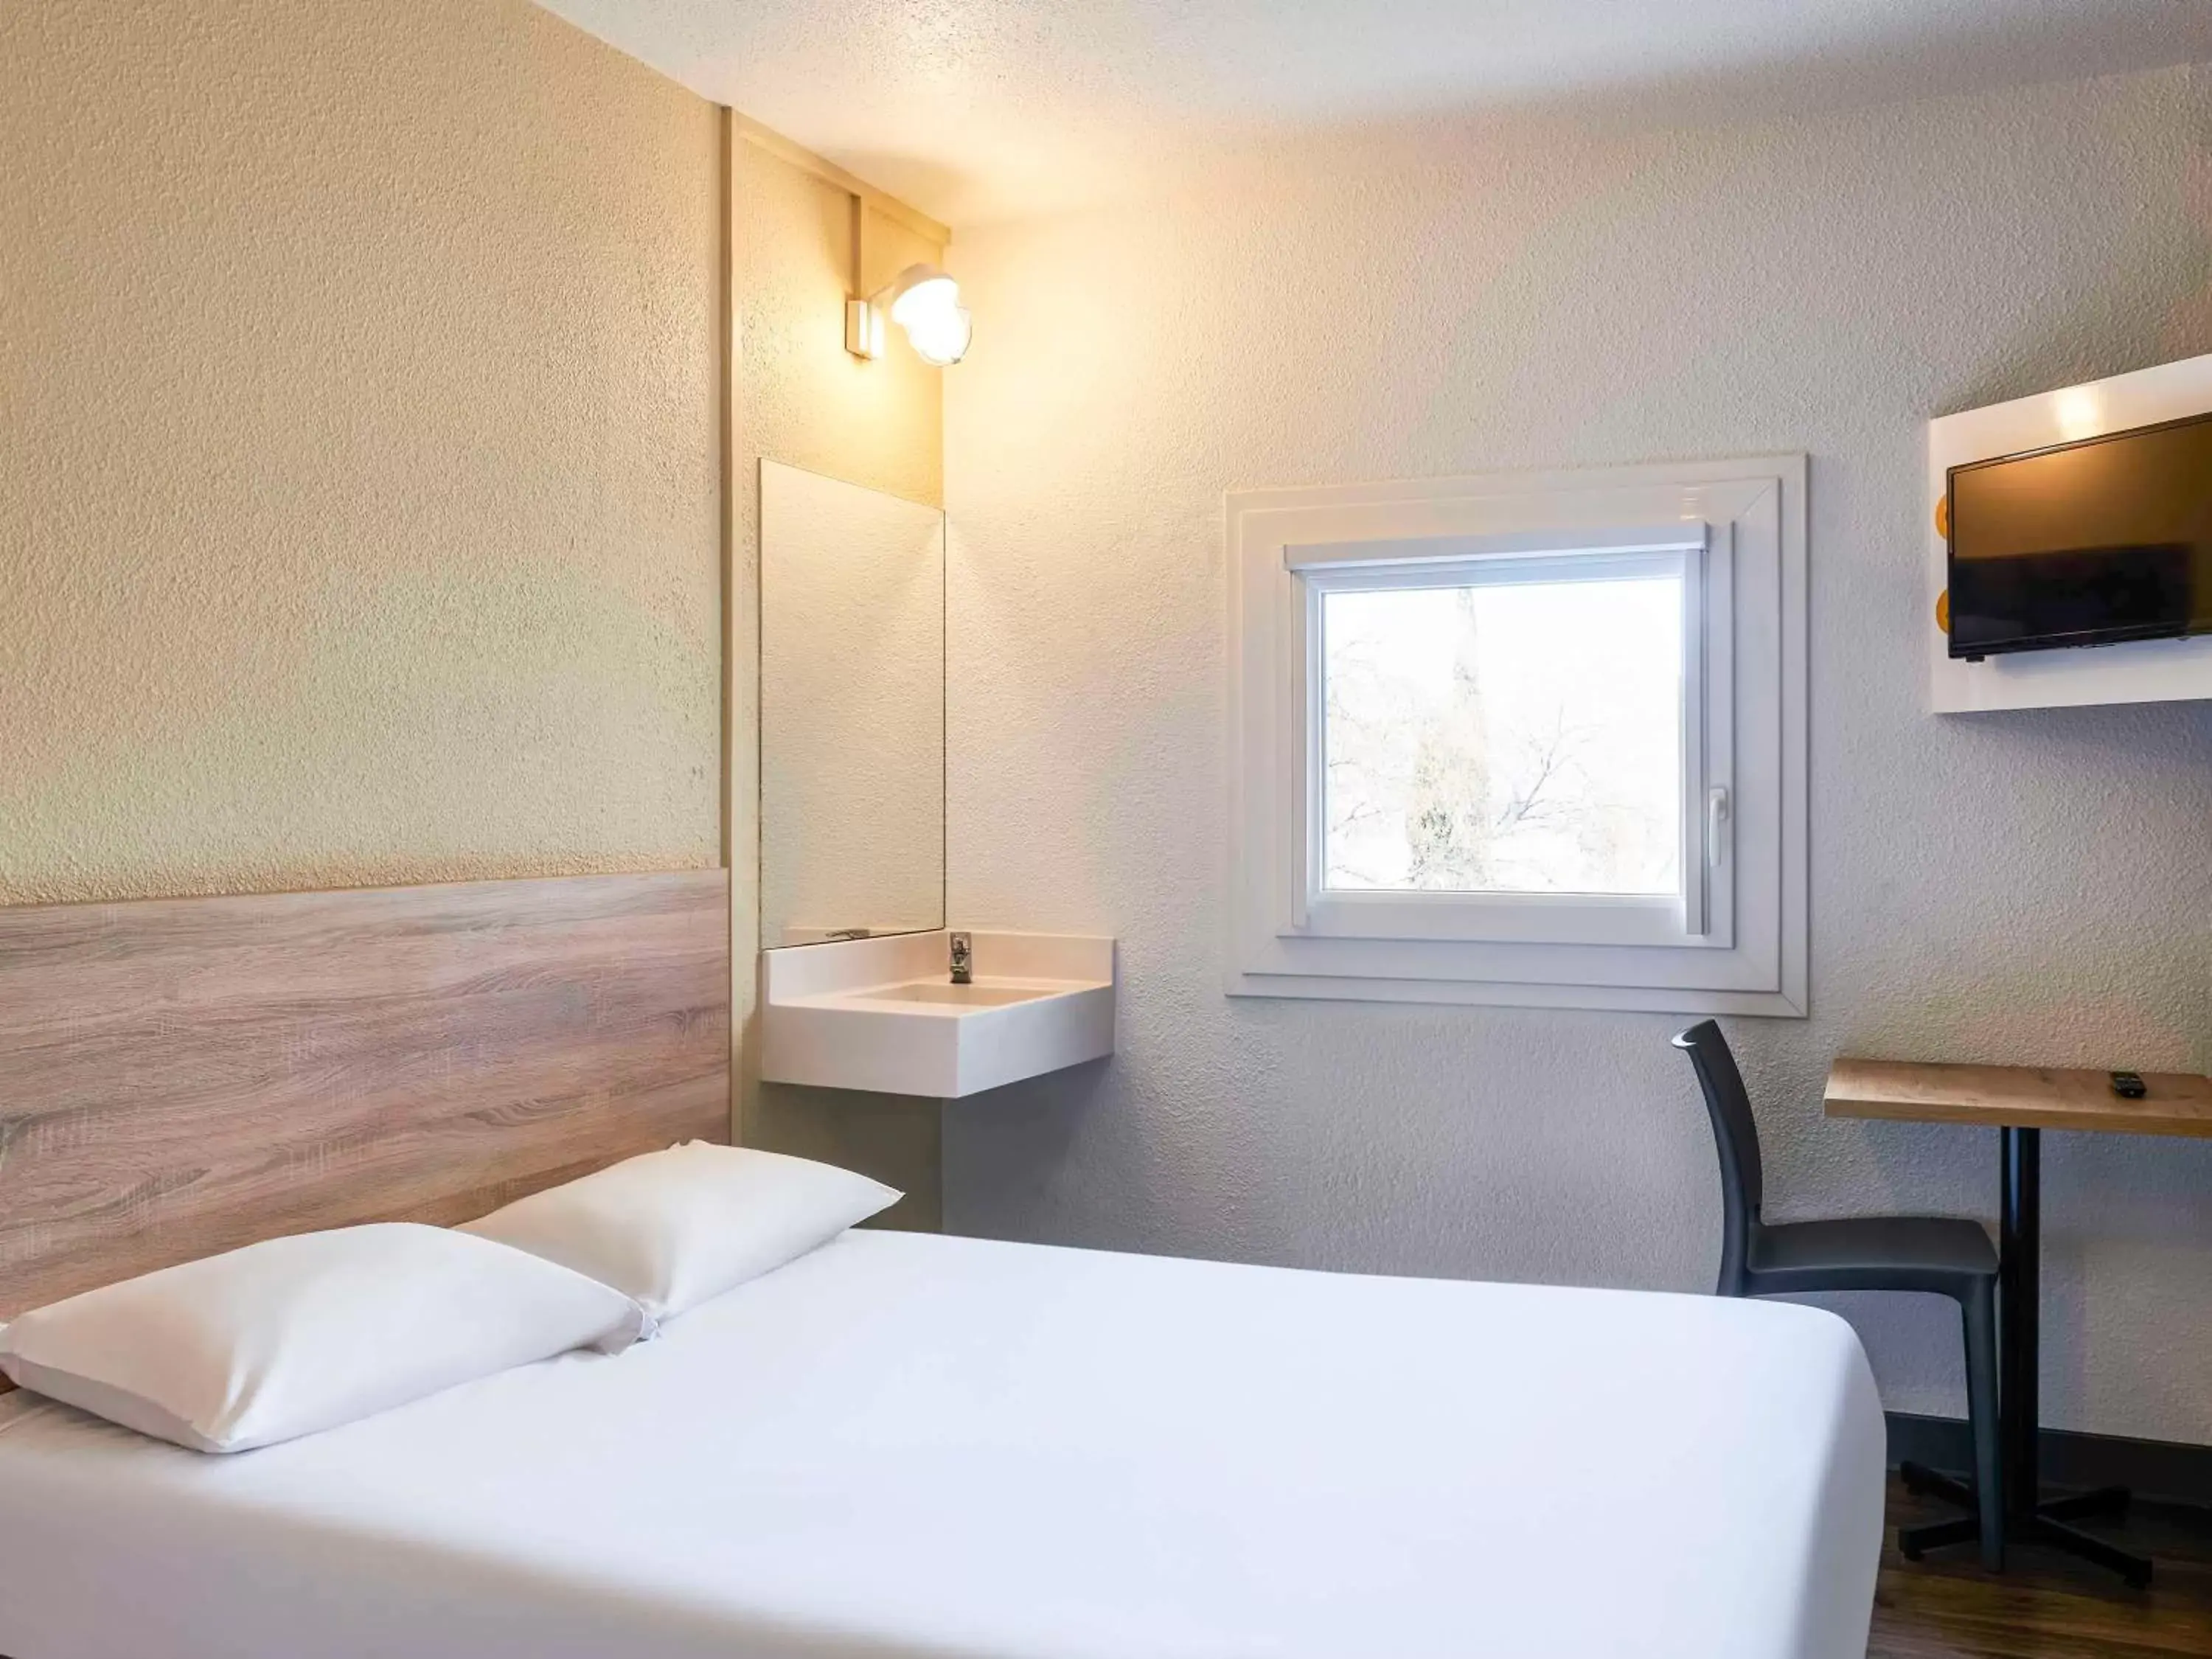 Bathroom, Bed in hotelF1 Paris Porte de Châtillon